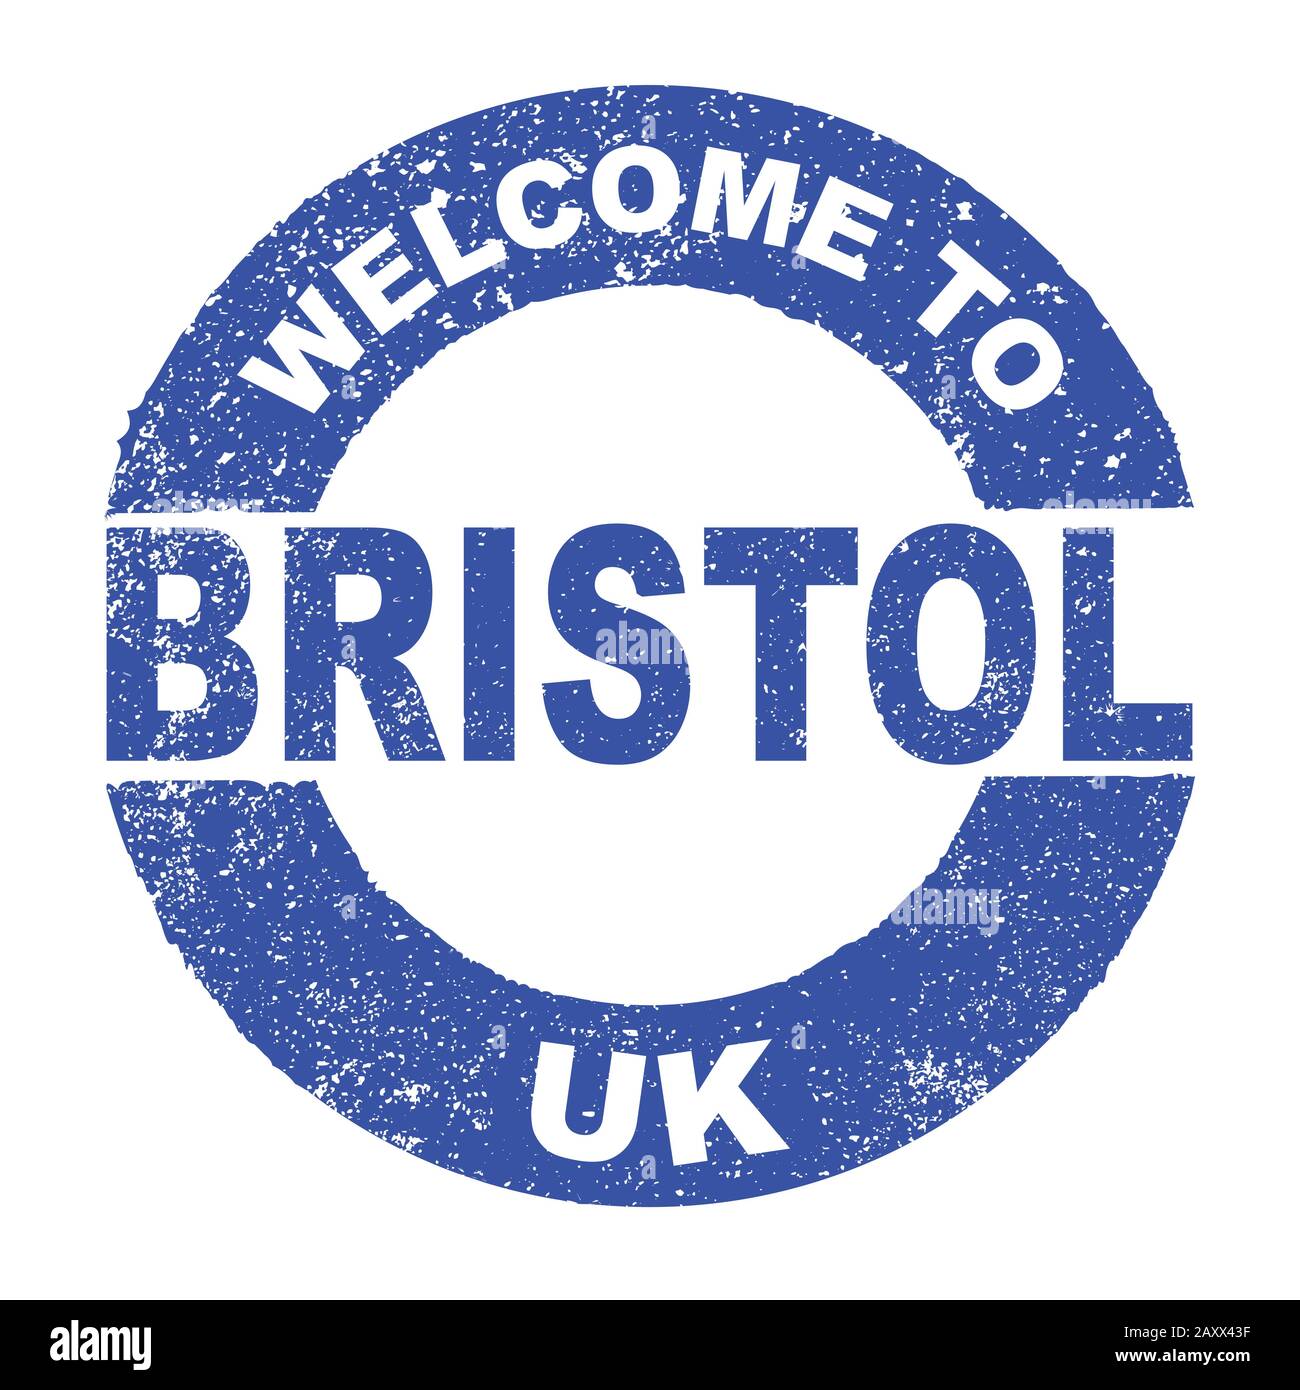 Ein grungener Gummi-Tintenstempel mit dem Text Willkommen In Bristol UK über einem weißen Hintergrund Stock Vektor